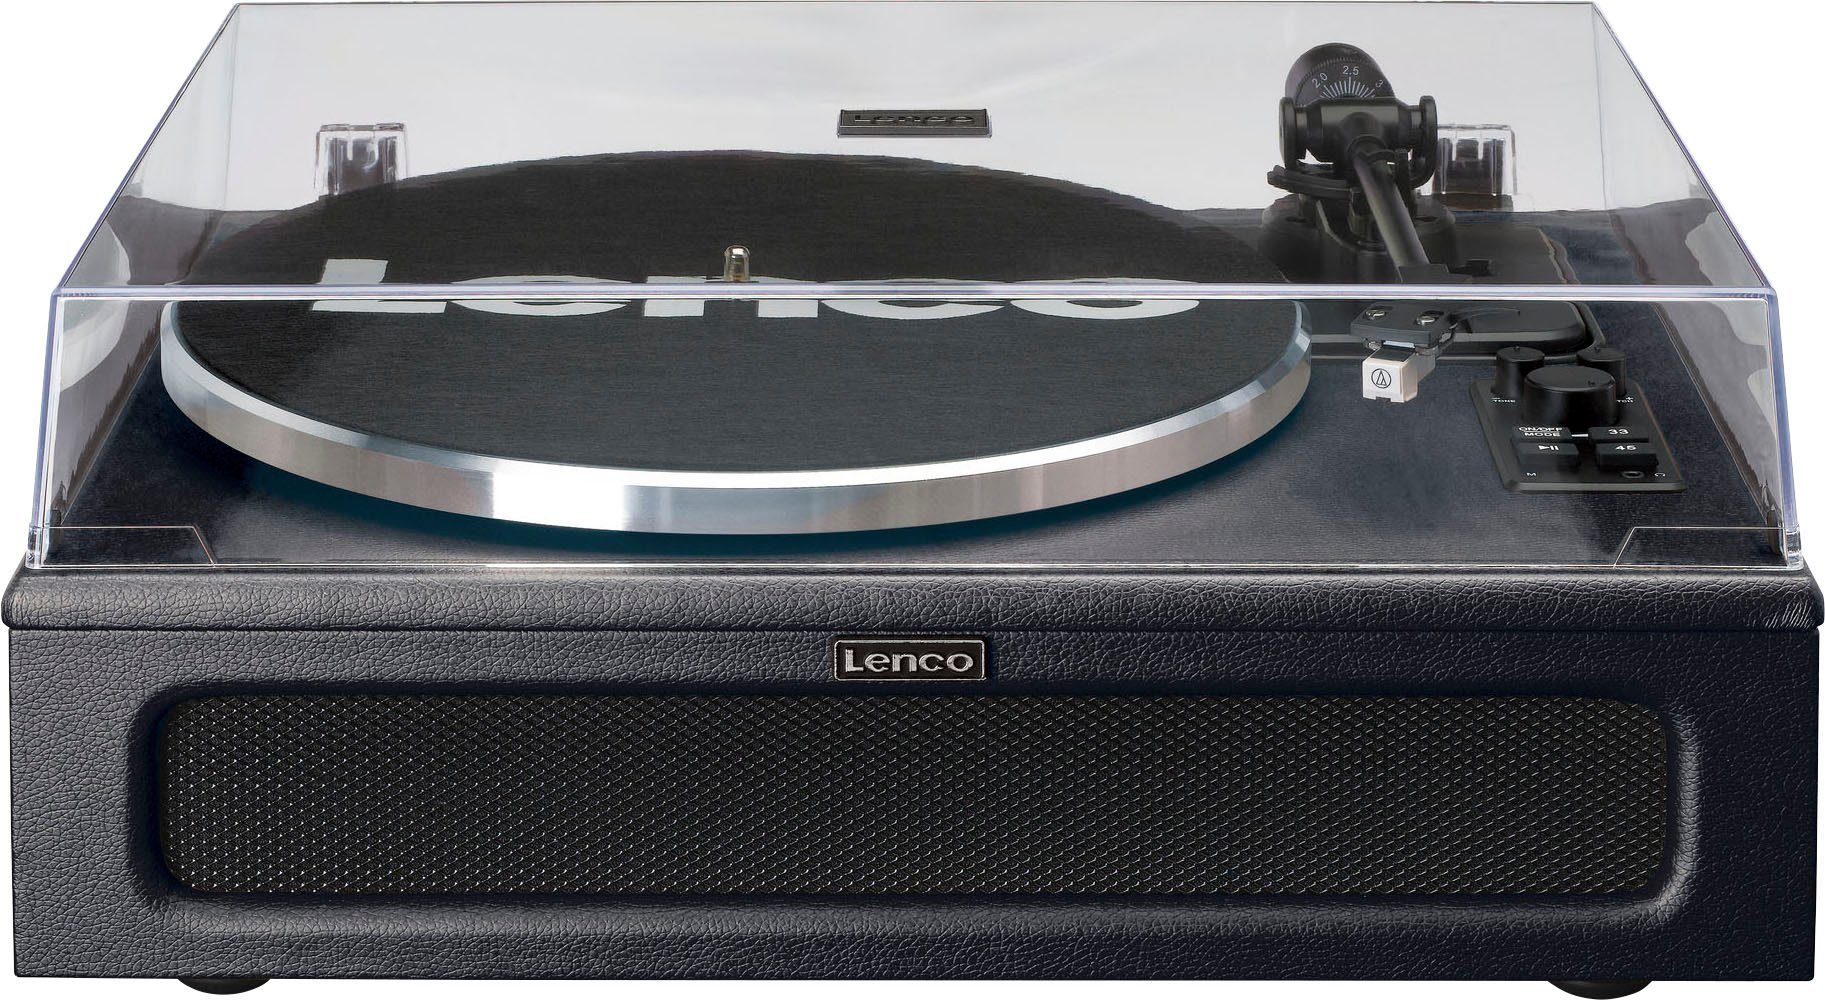 Lenco Lautsprechern Plattenspieler (Riemenantrieb) 4 schwarz Plattenspieler mit LS-430